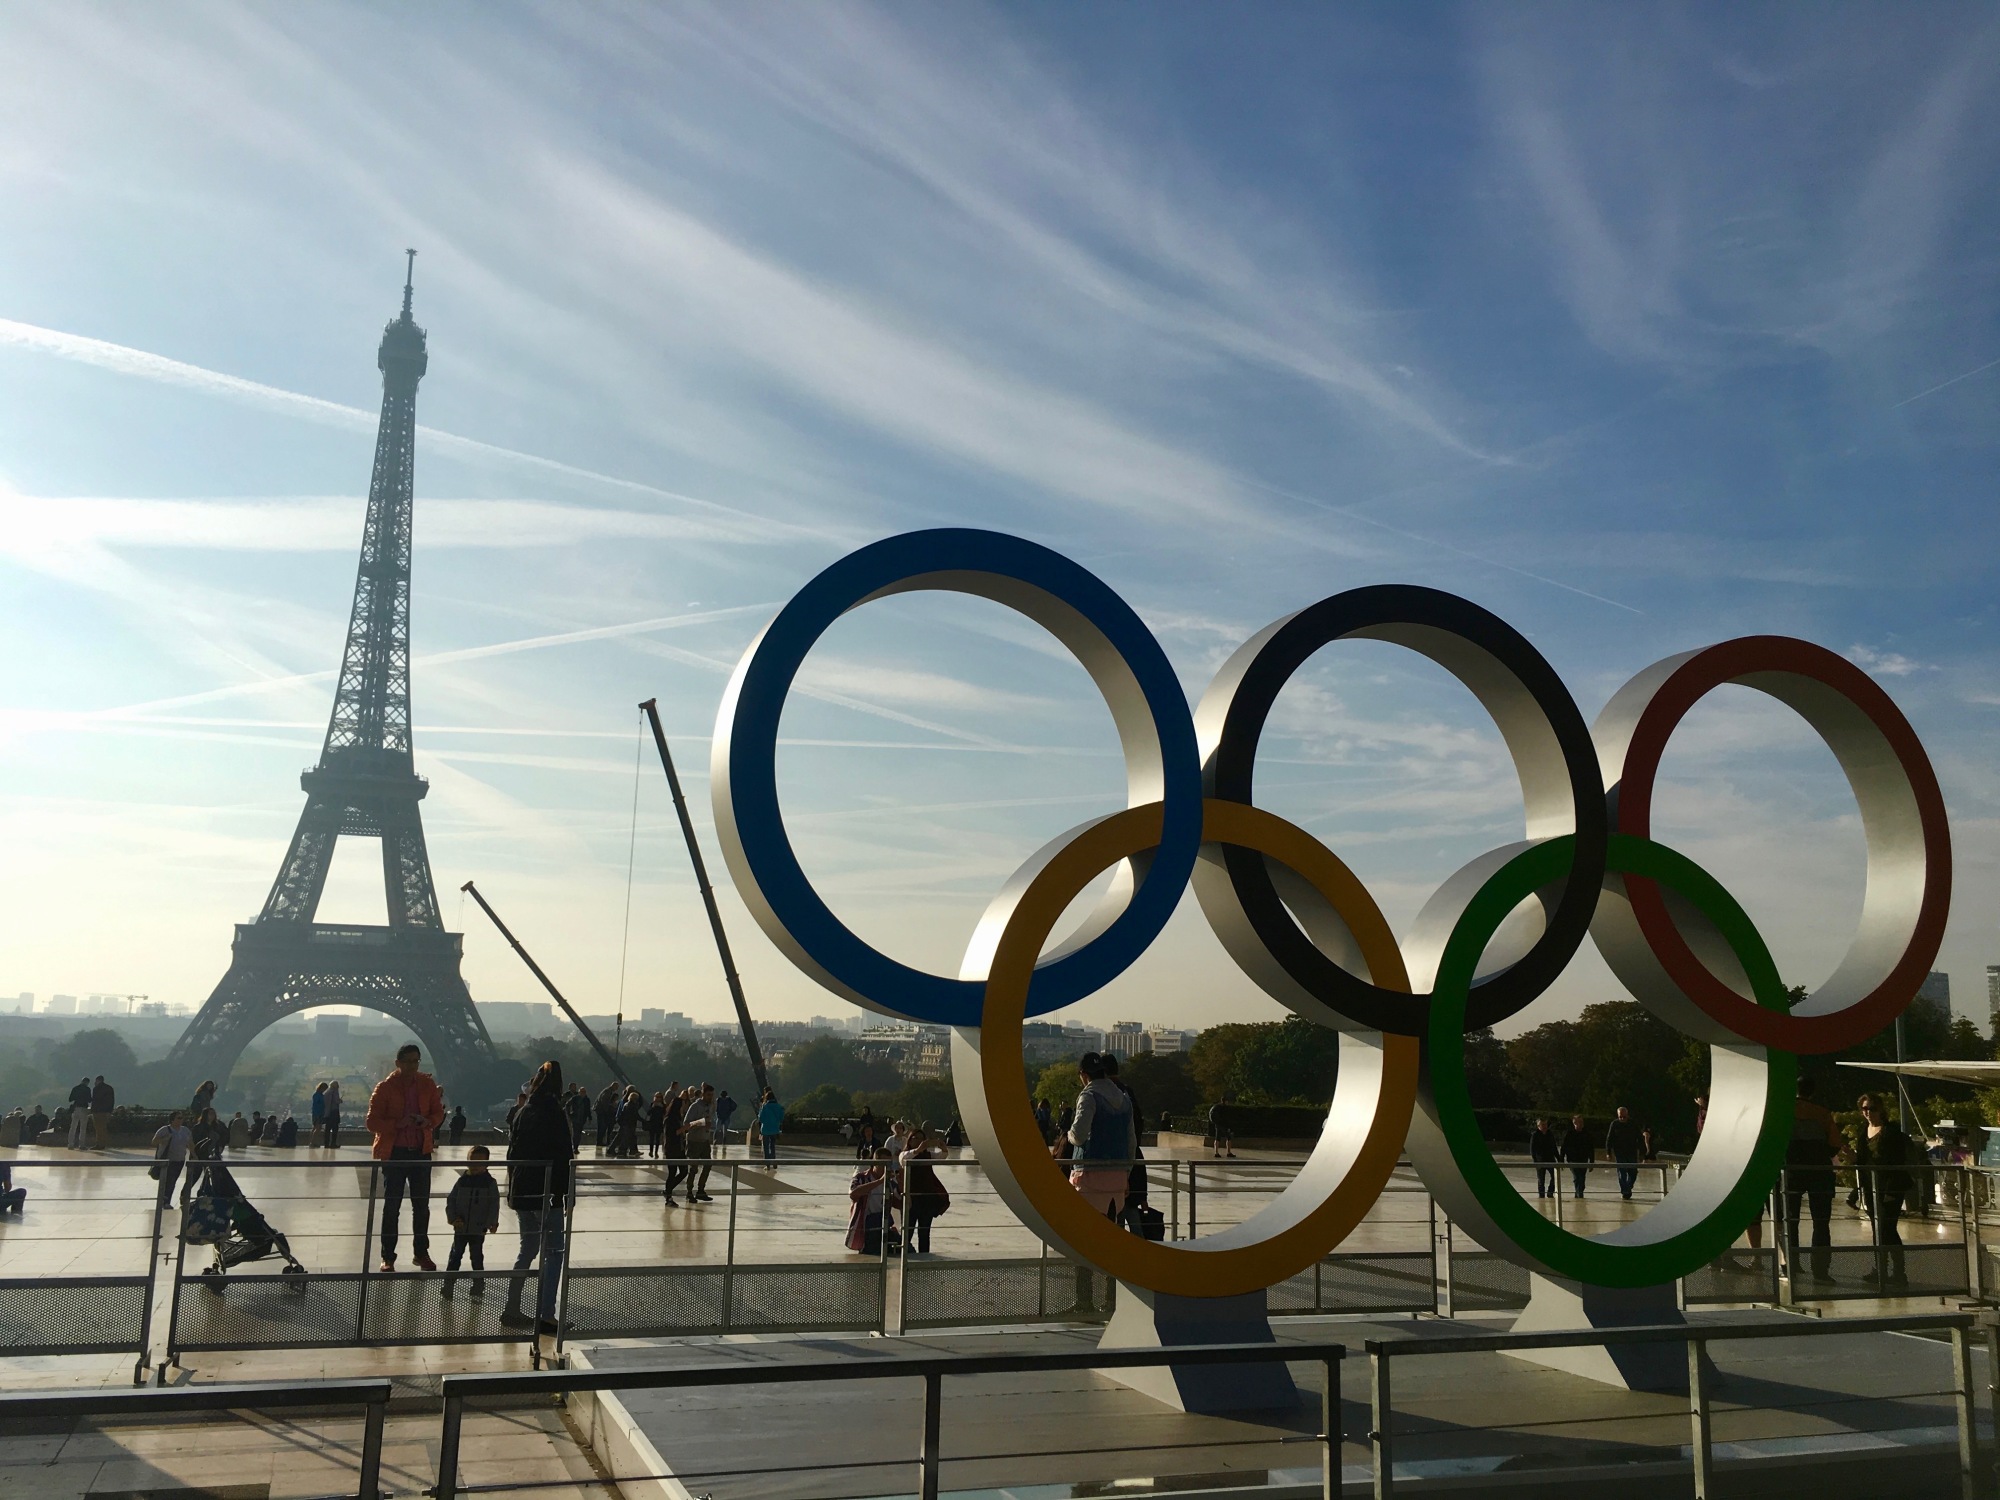 Statue représentant les anneaux des Jeux Olympiques avec la Tour Eiffel en fond